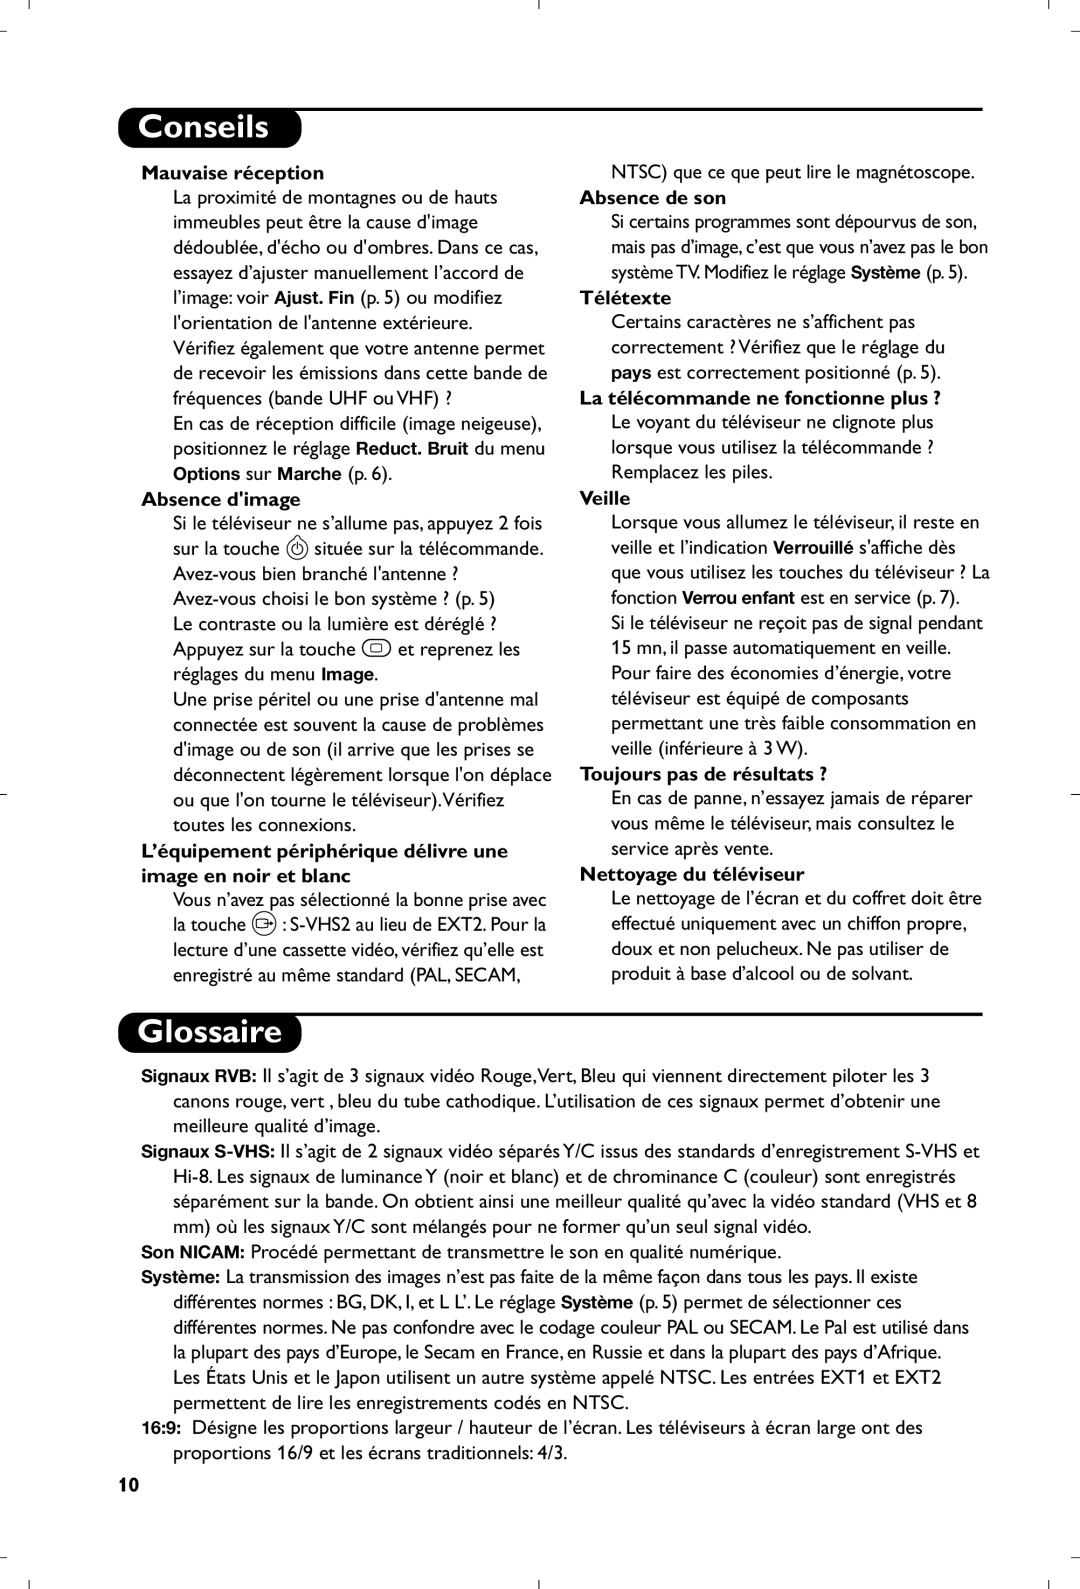 Philips 21PT4457/58 manual Conseils, Glossaire, Mauvaise réception, Absence dimage, Absence de son, Télétexte, Veille 